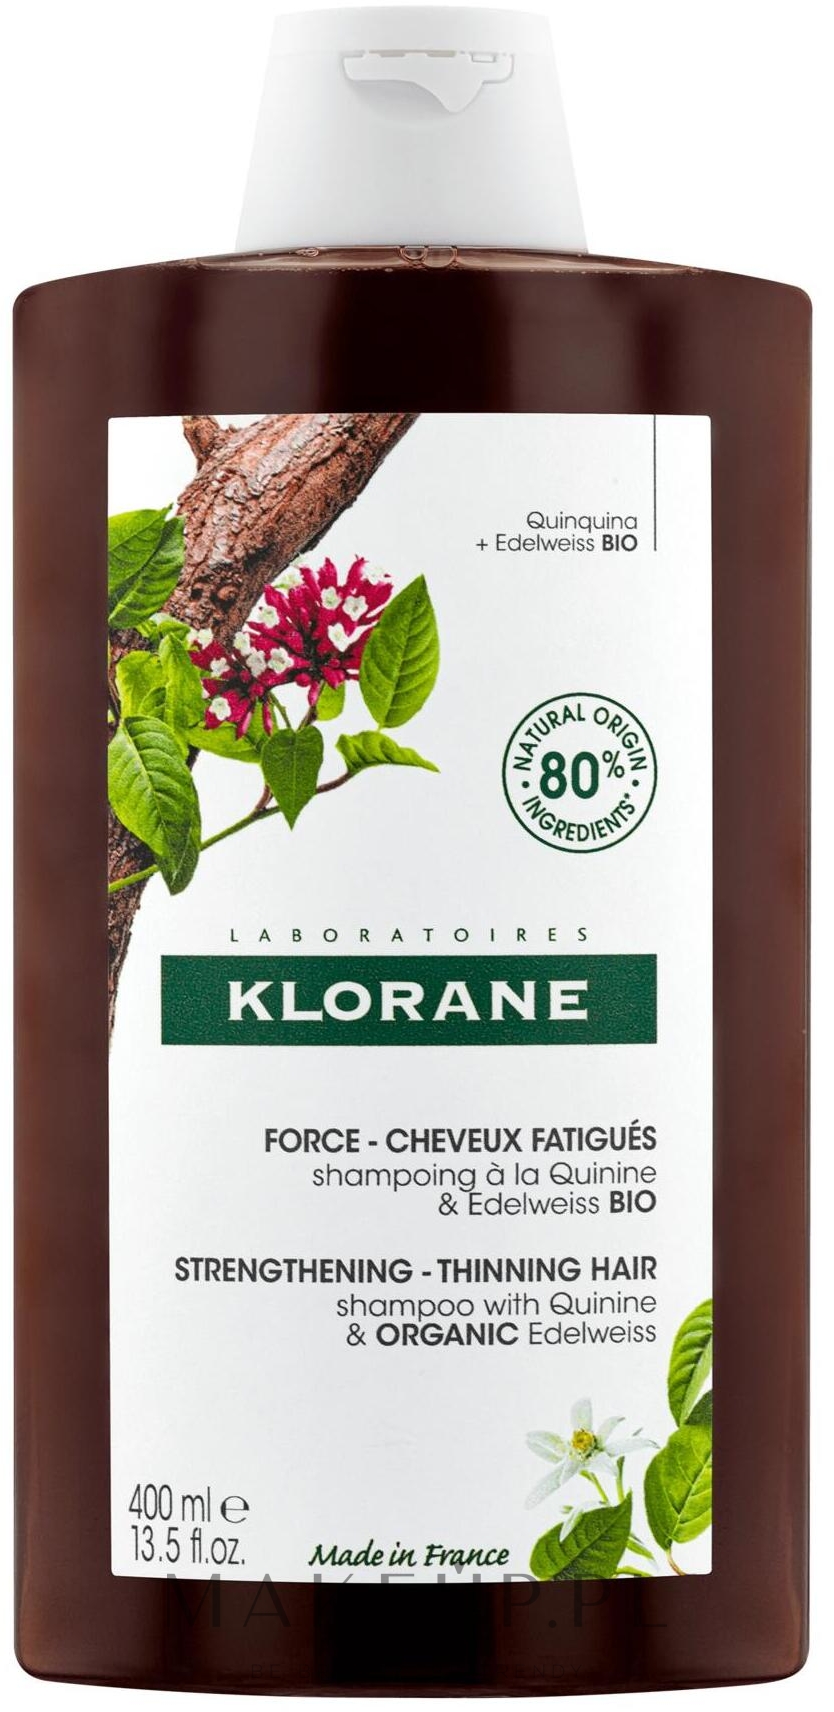 Wzmacniający szampon do włosów cienkich i skłonnych do wypadania - Klorane Force Tired Hair & Hair Loss Shampoo with Organic Quinine and Edelweiss  — Zdjęcie 400 ml